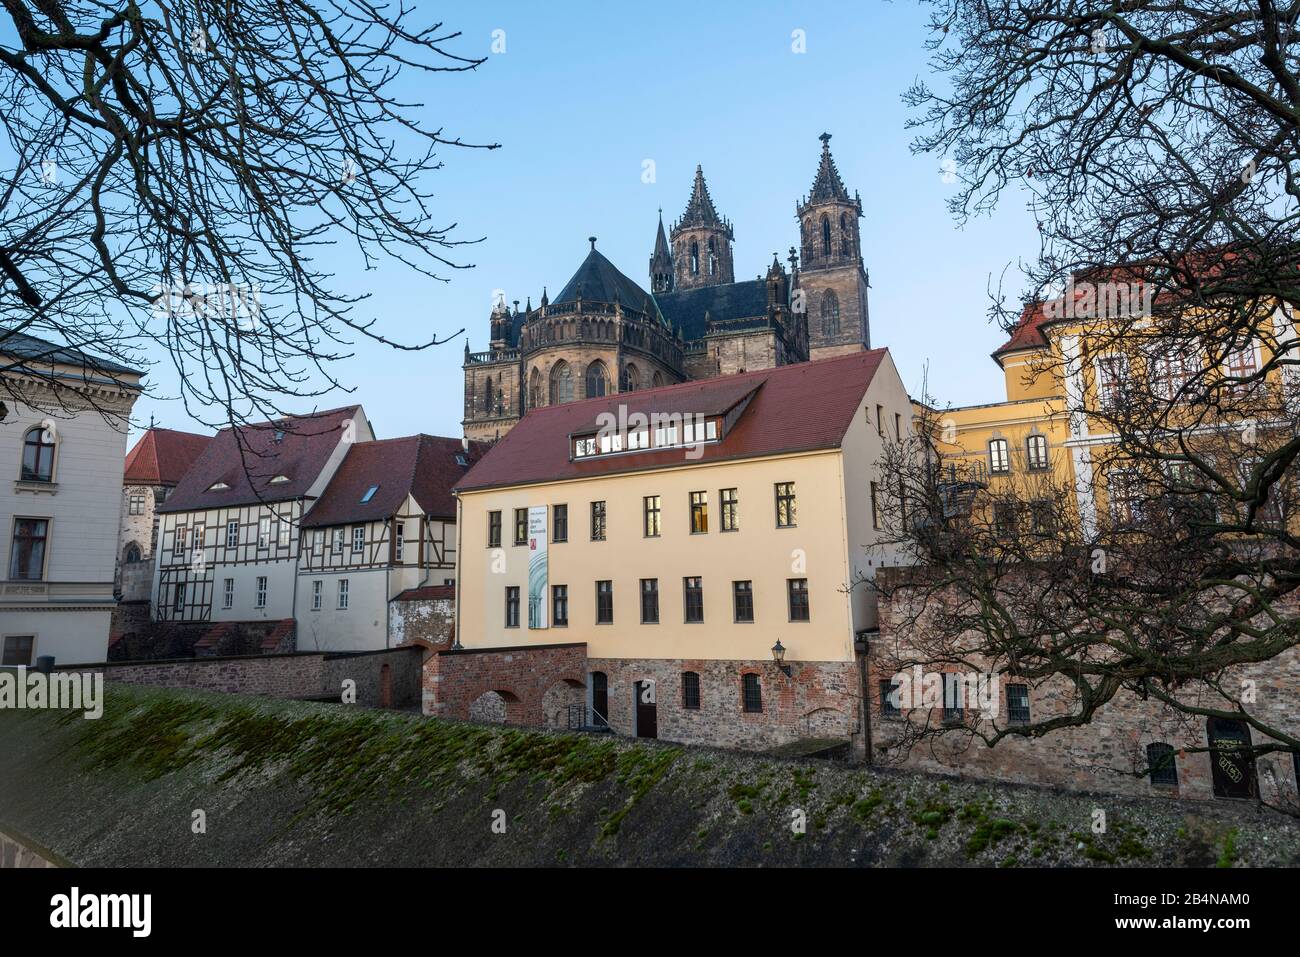 Deutschland, Sachsen-Anhalt, Magdeburg, Dom zu Magdeburg. (1520 wurde der Dombau nach 311 Jahren Bauzeit beendet.) Stock Photo